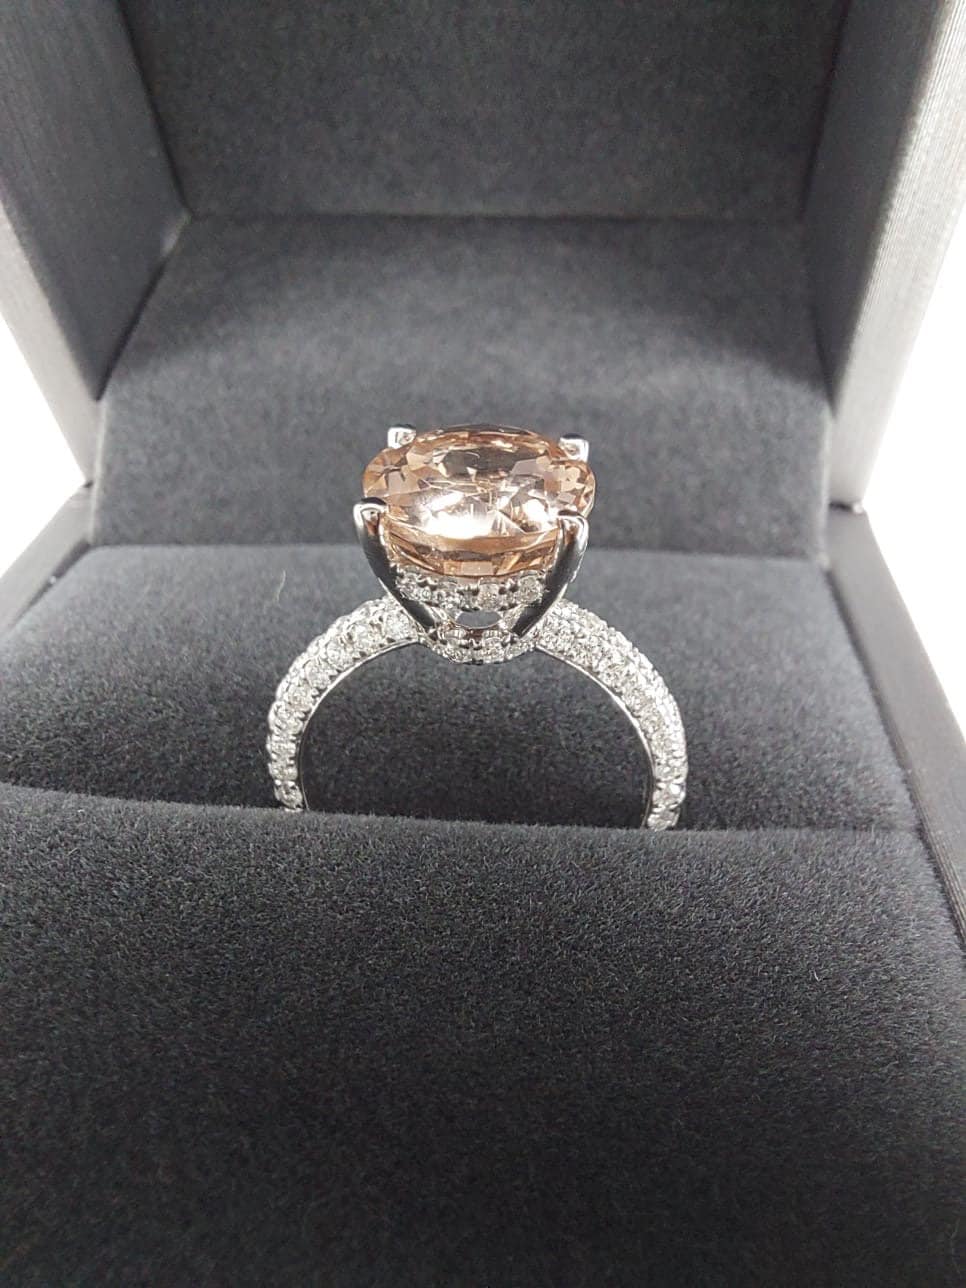 3 1/2 Carat Morganite Engagement Ring Rose Gold Oval Morganite Ring Hidden Halo Diamonds Oval Morganite Ring